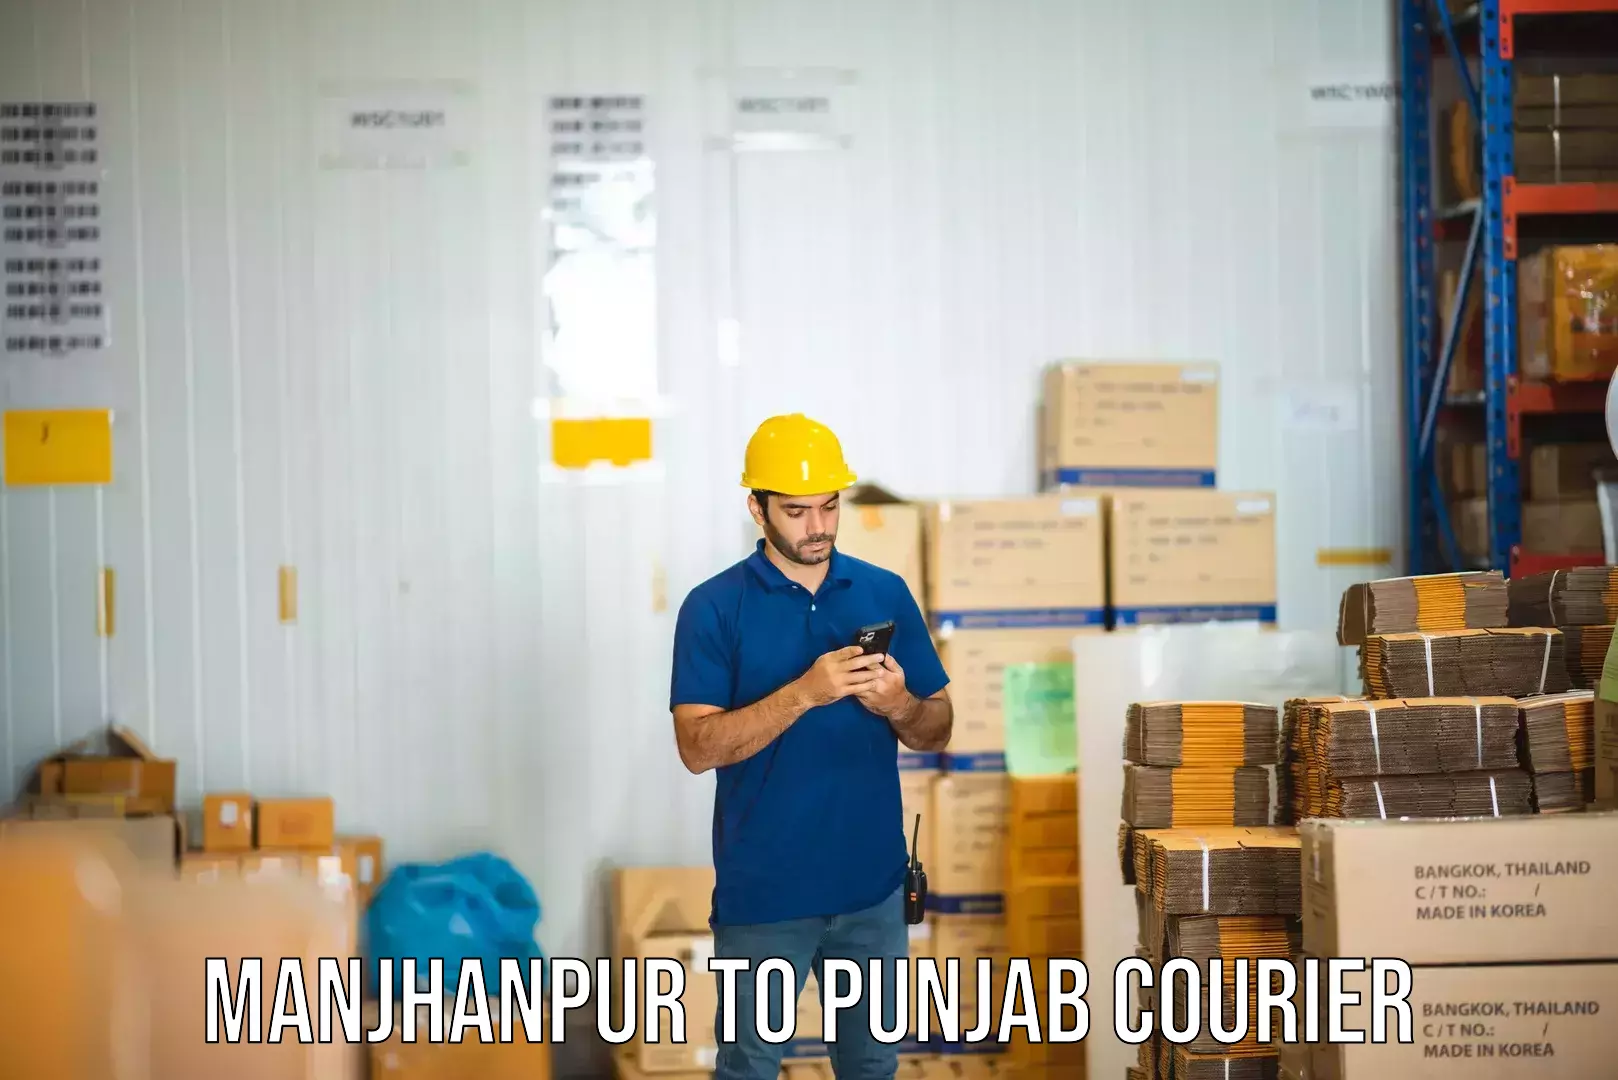 Nationwide shipping capabilities Manjhanpur to Anandpur Sahib